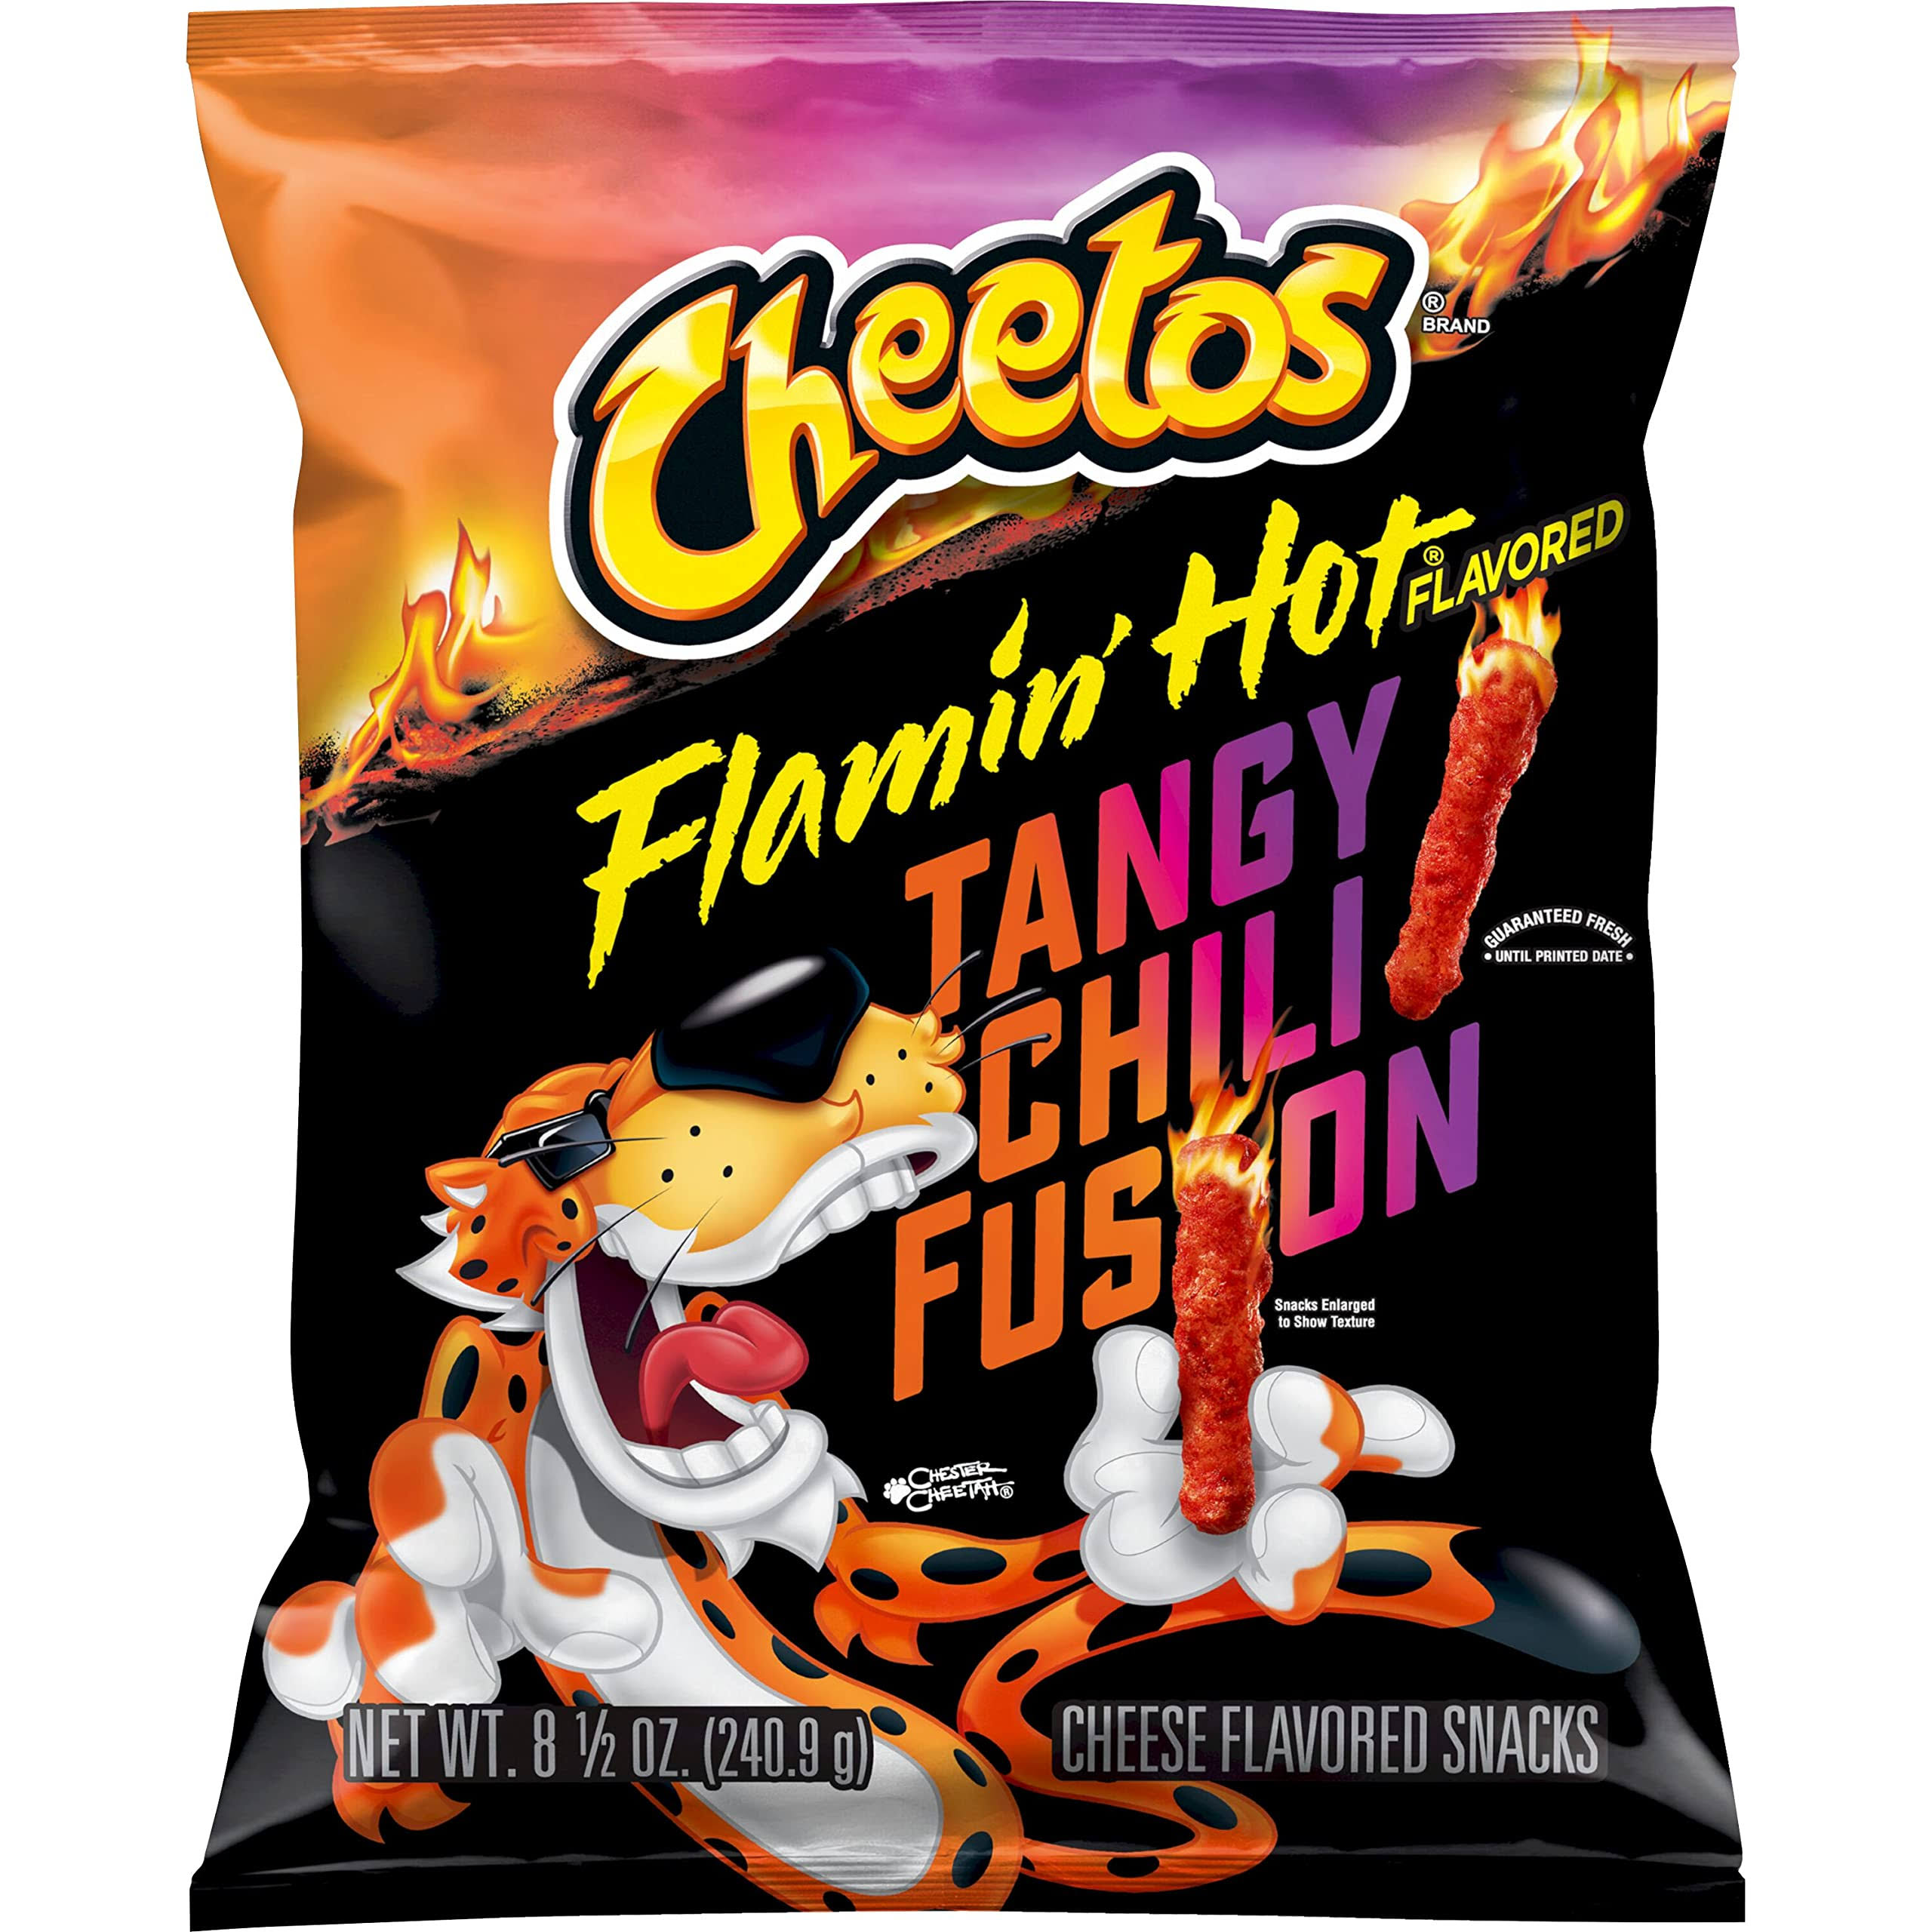 Cheetos Flamin Hot Tangy Chili Fusion Snacks 8.5 oz